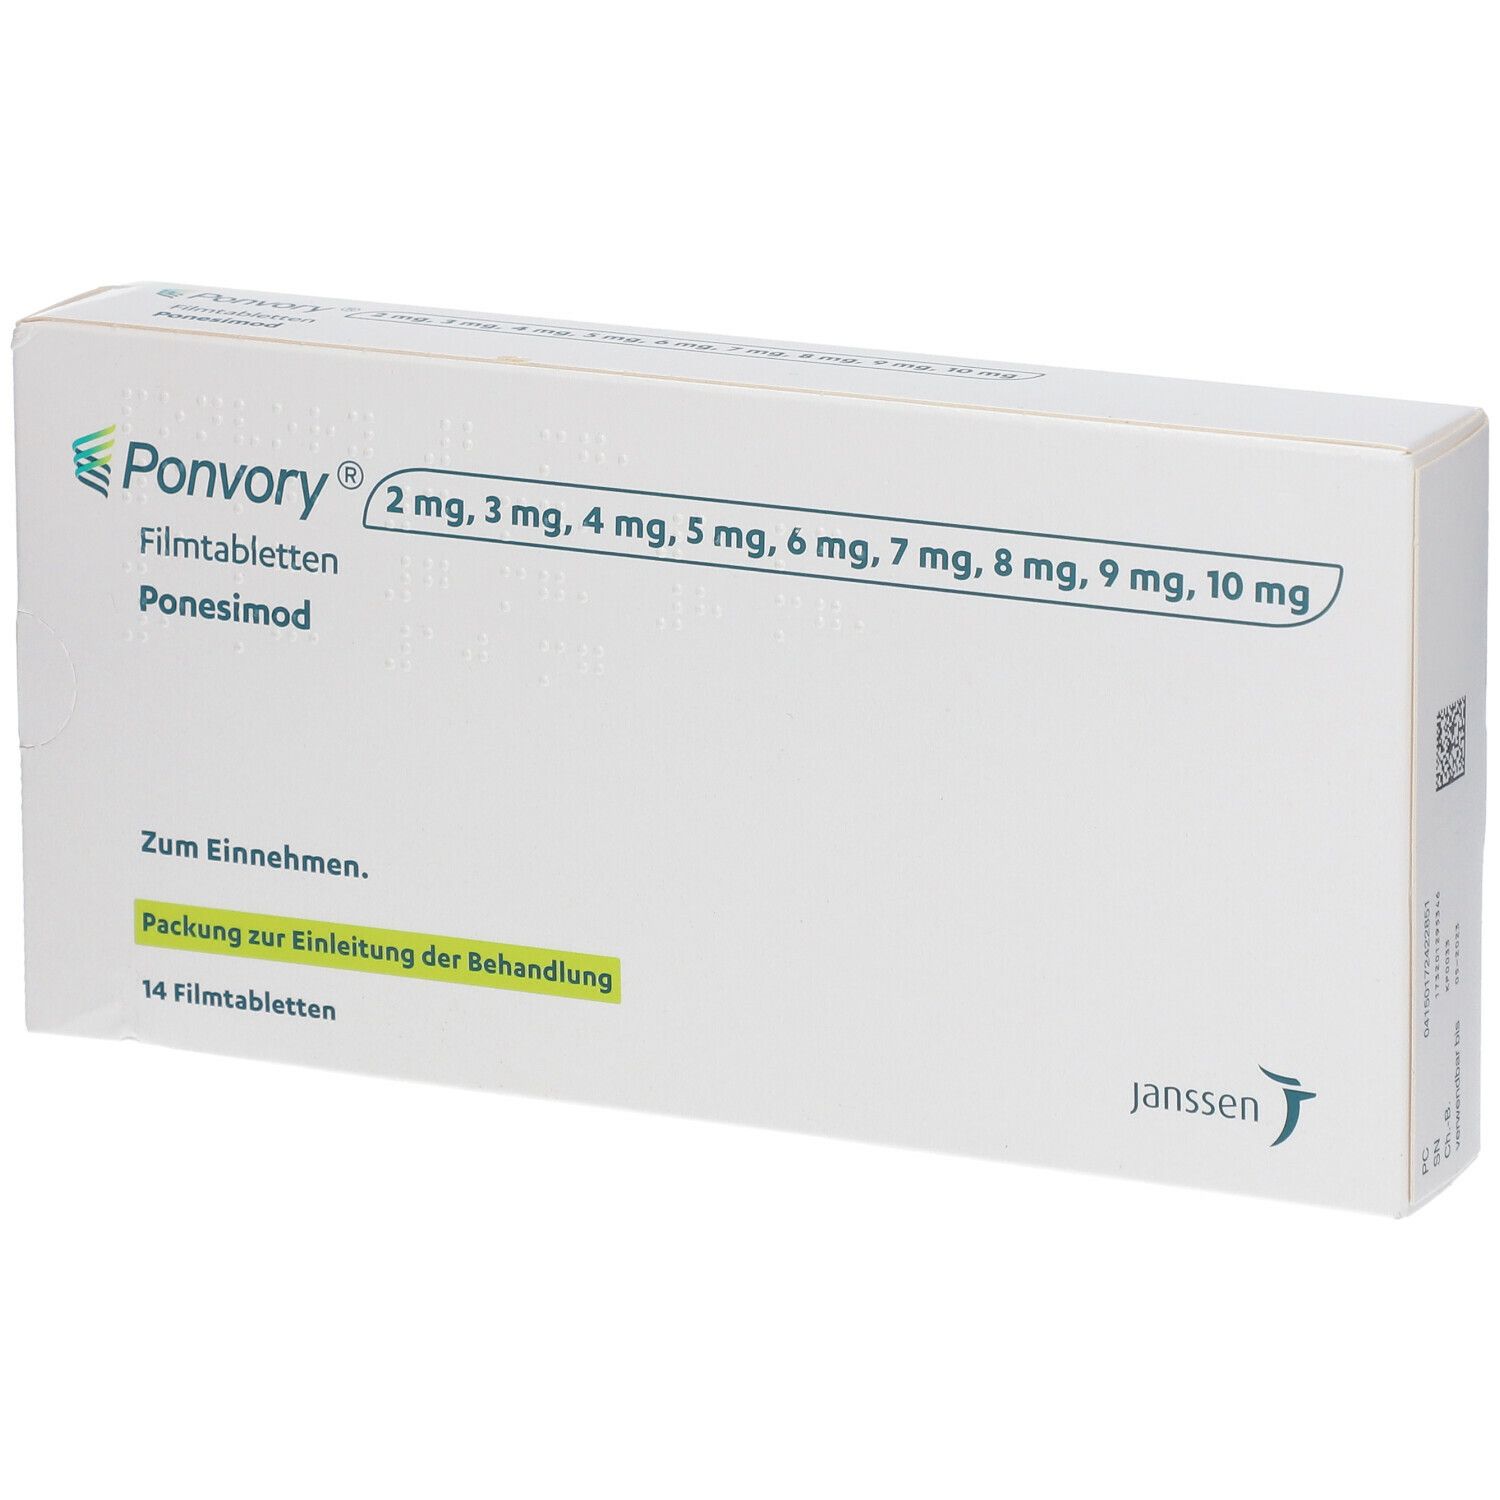 Ponvory Packung Zur Einleitung Der Behandlung